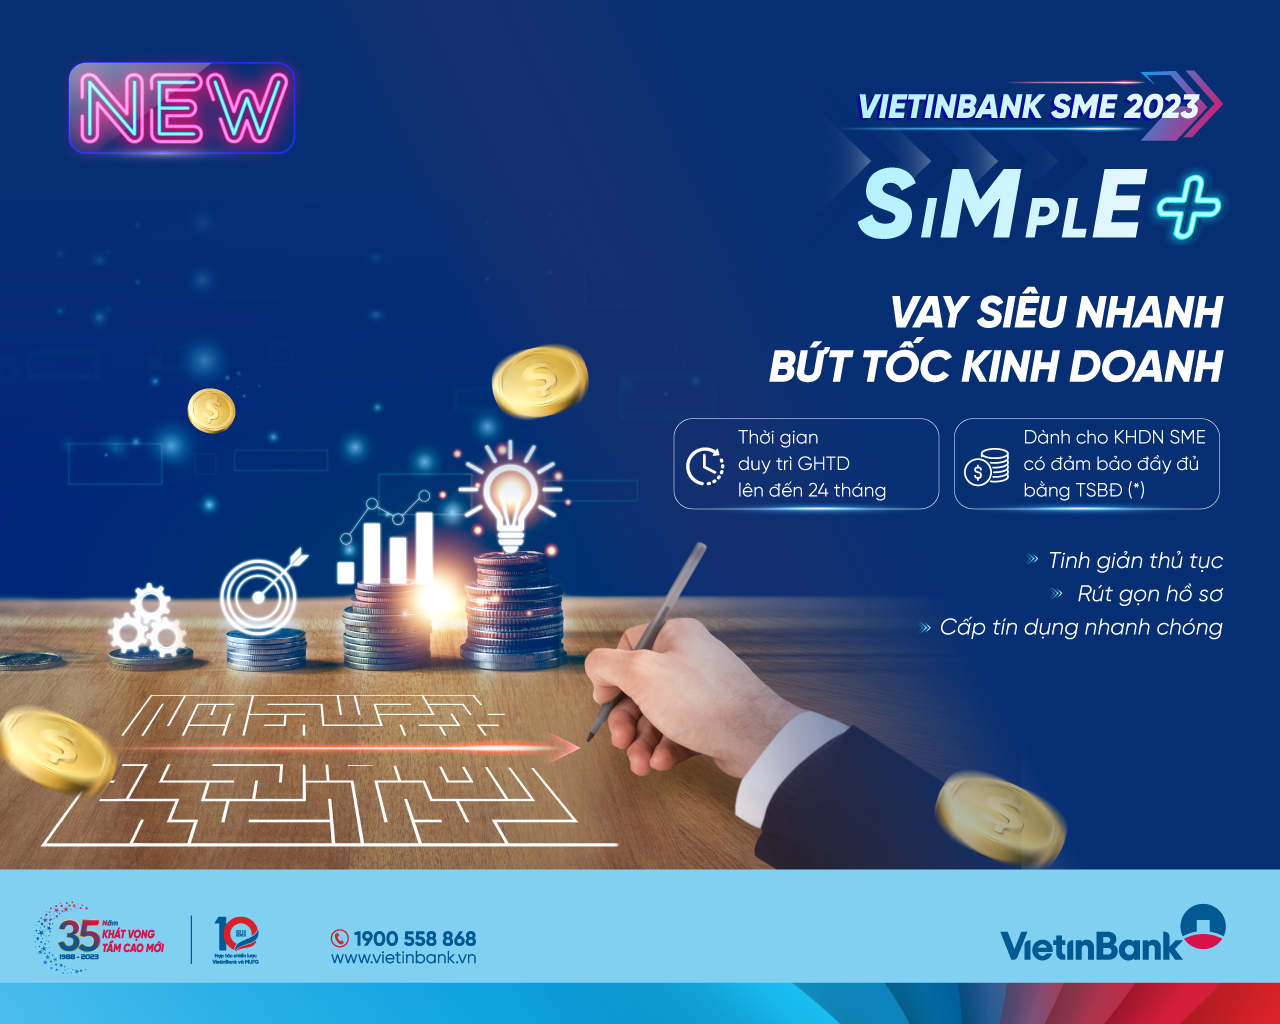 VietinBank SME SIMPLE+: Giải pháp đột phá dành cho doanh nghiệp ...